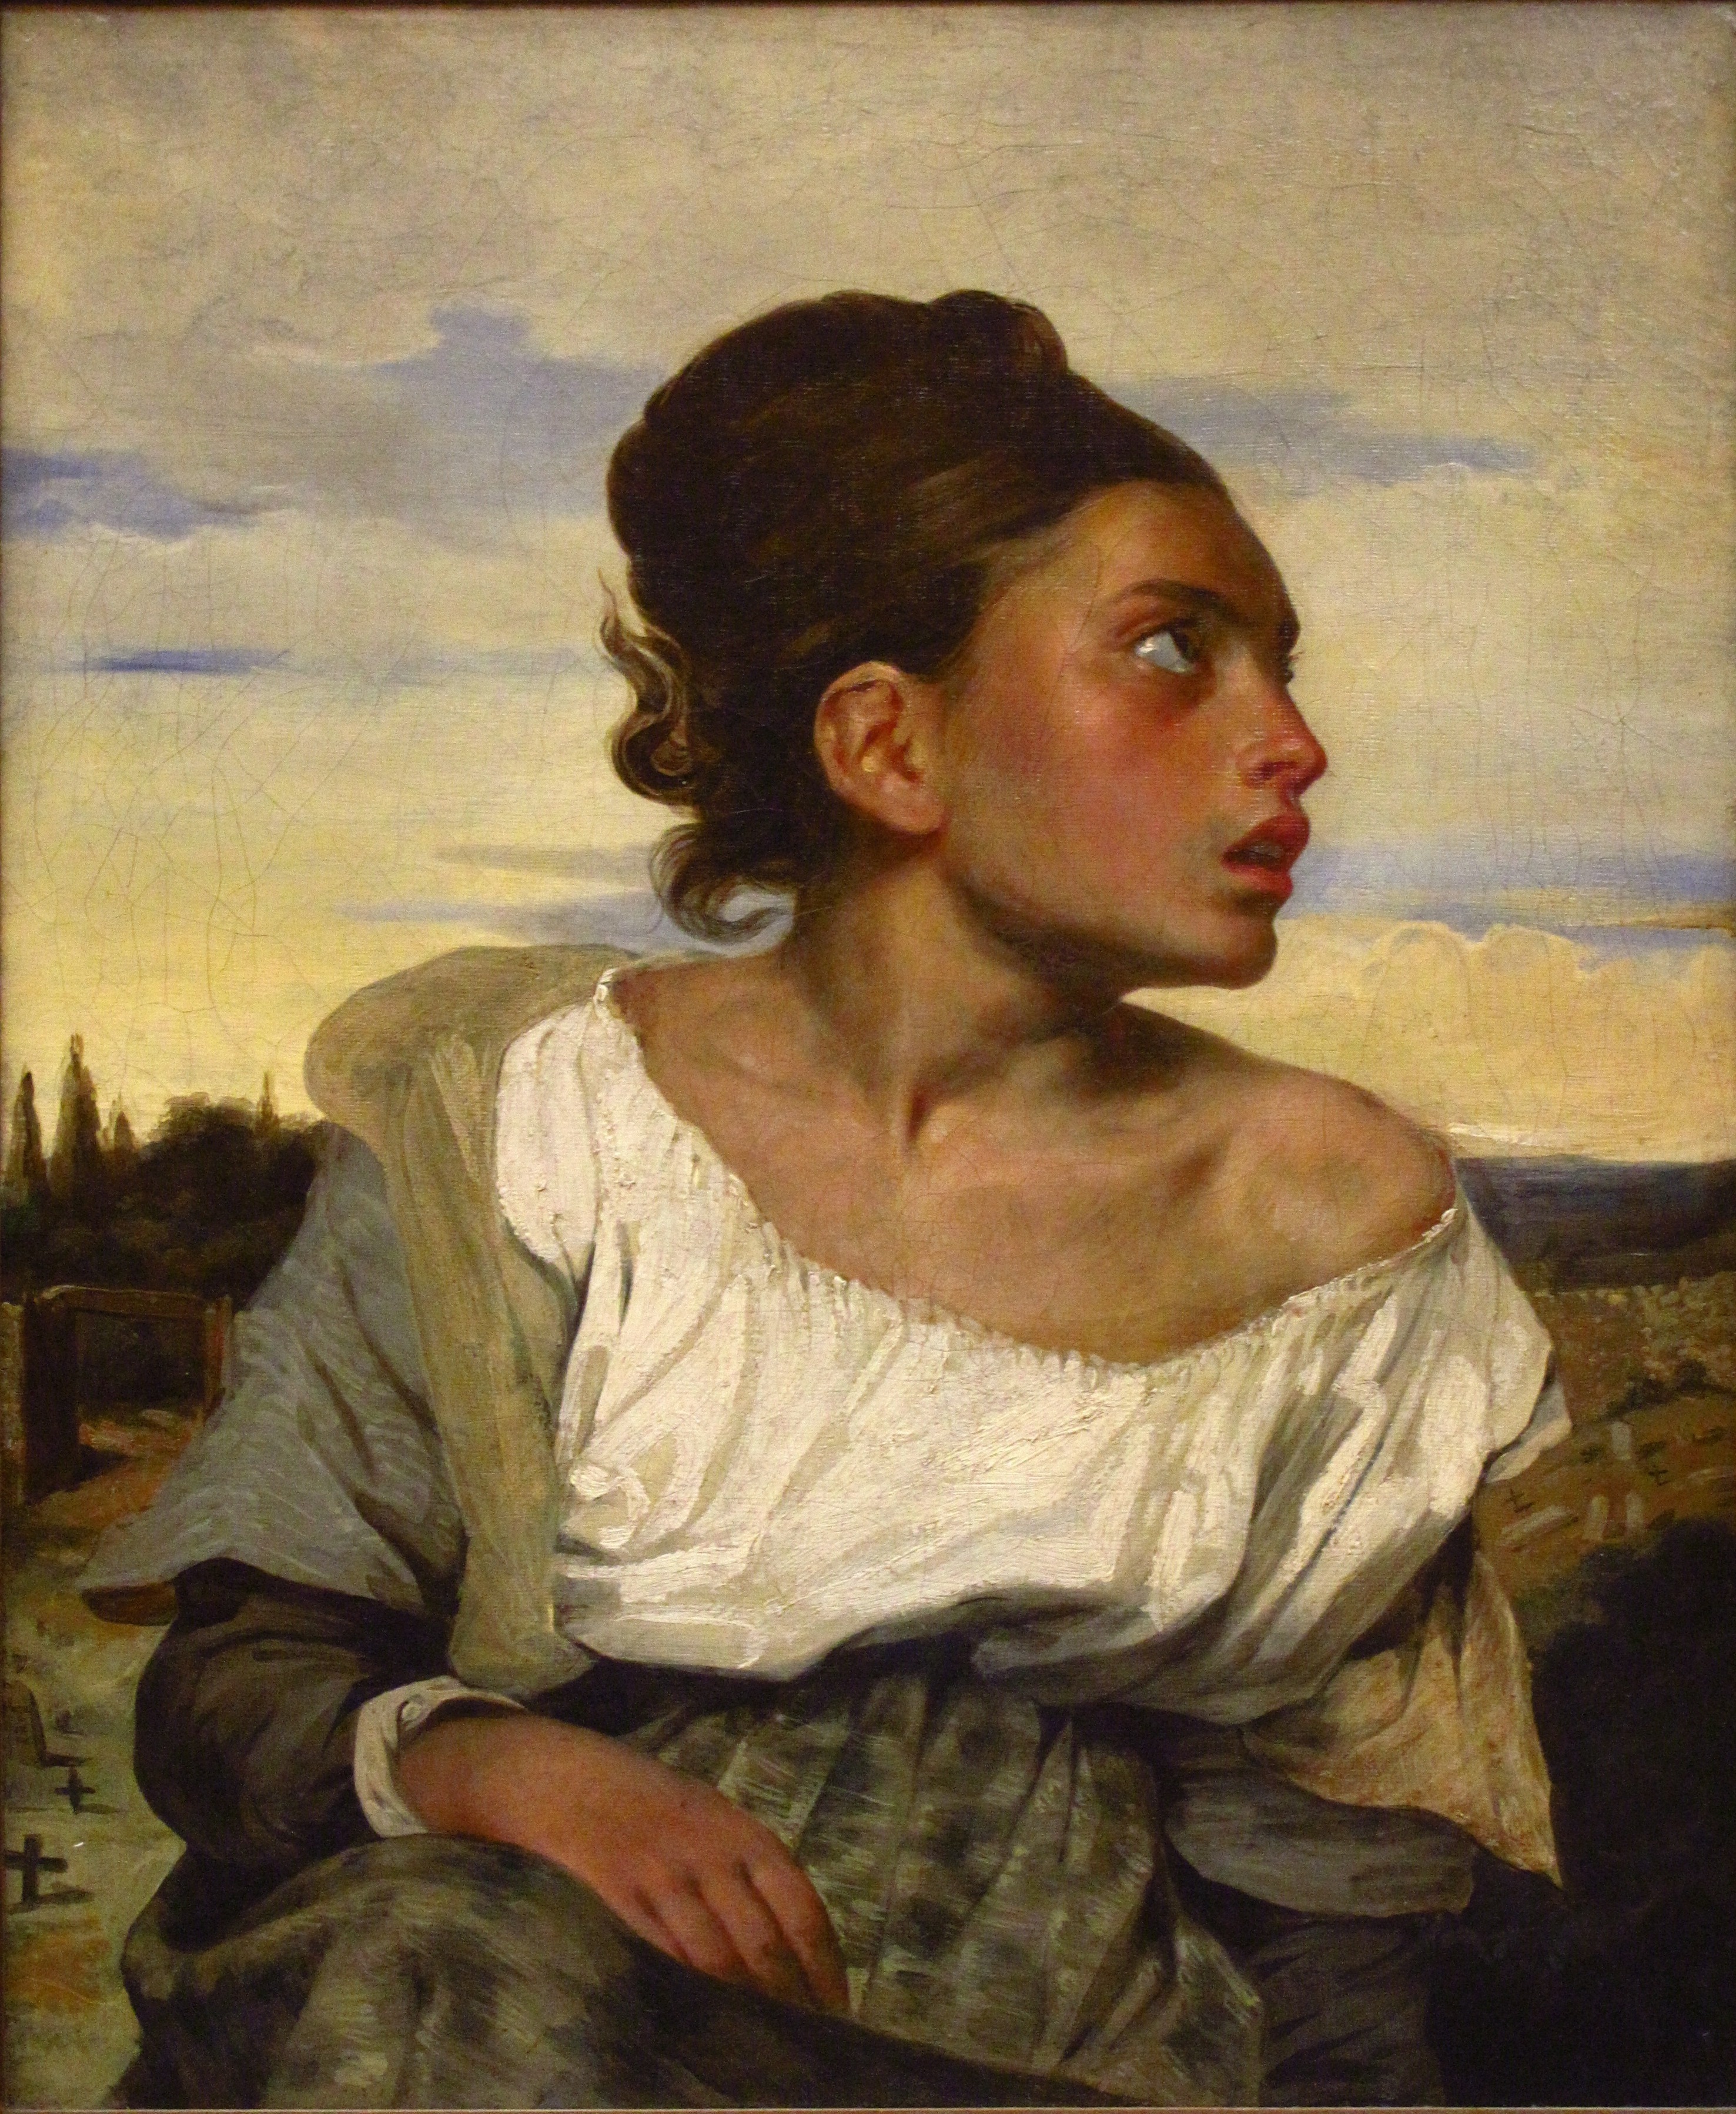 公墓裡的年輕孤女 by Eugène Delacroix - 1824 - 66 × 54厘米 